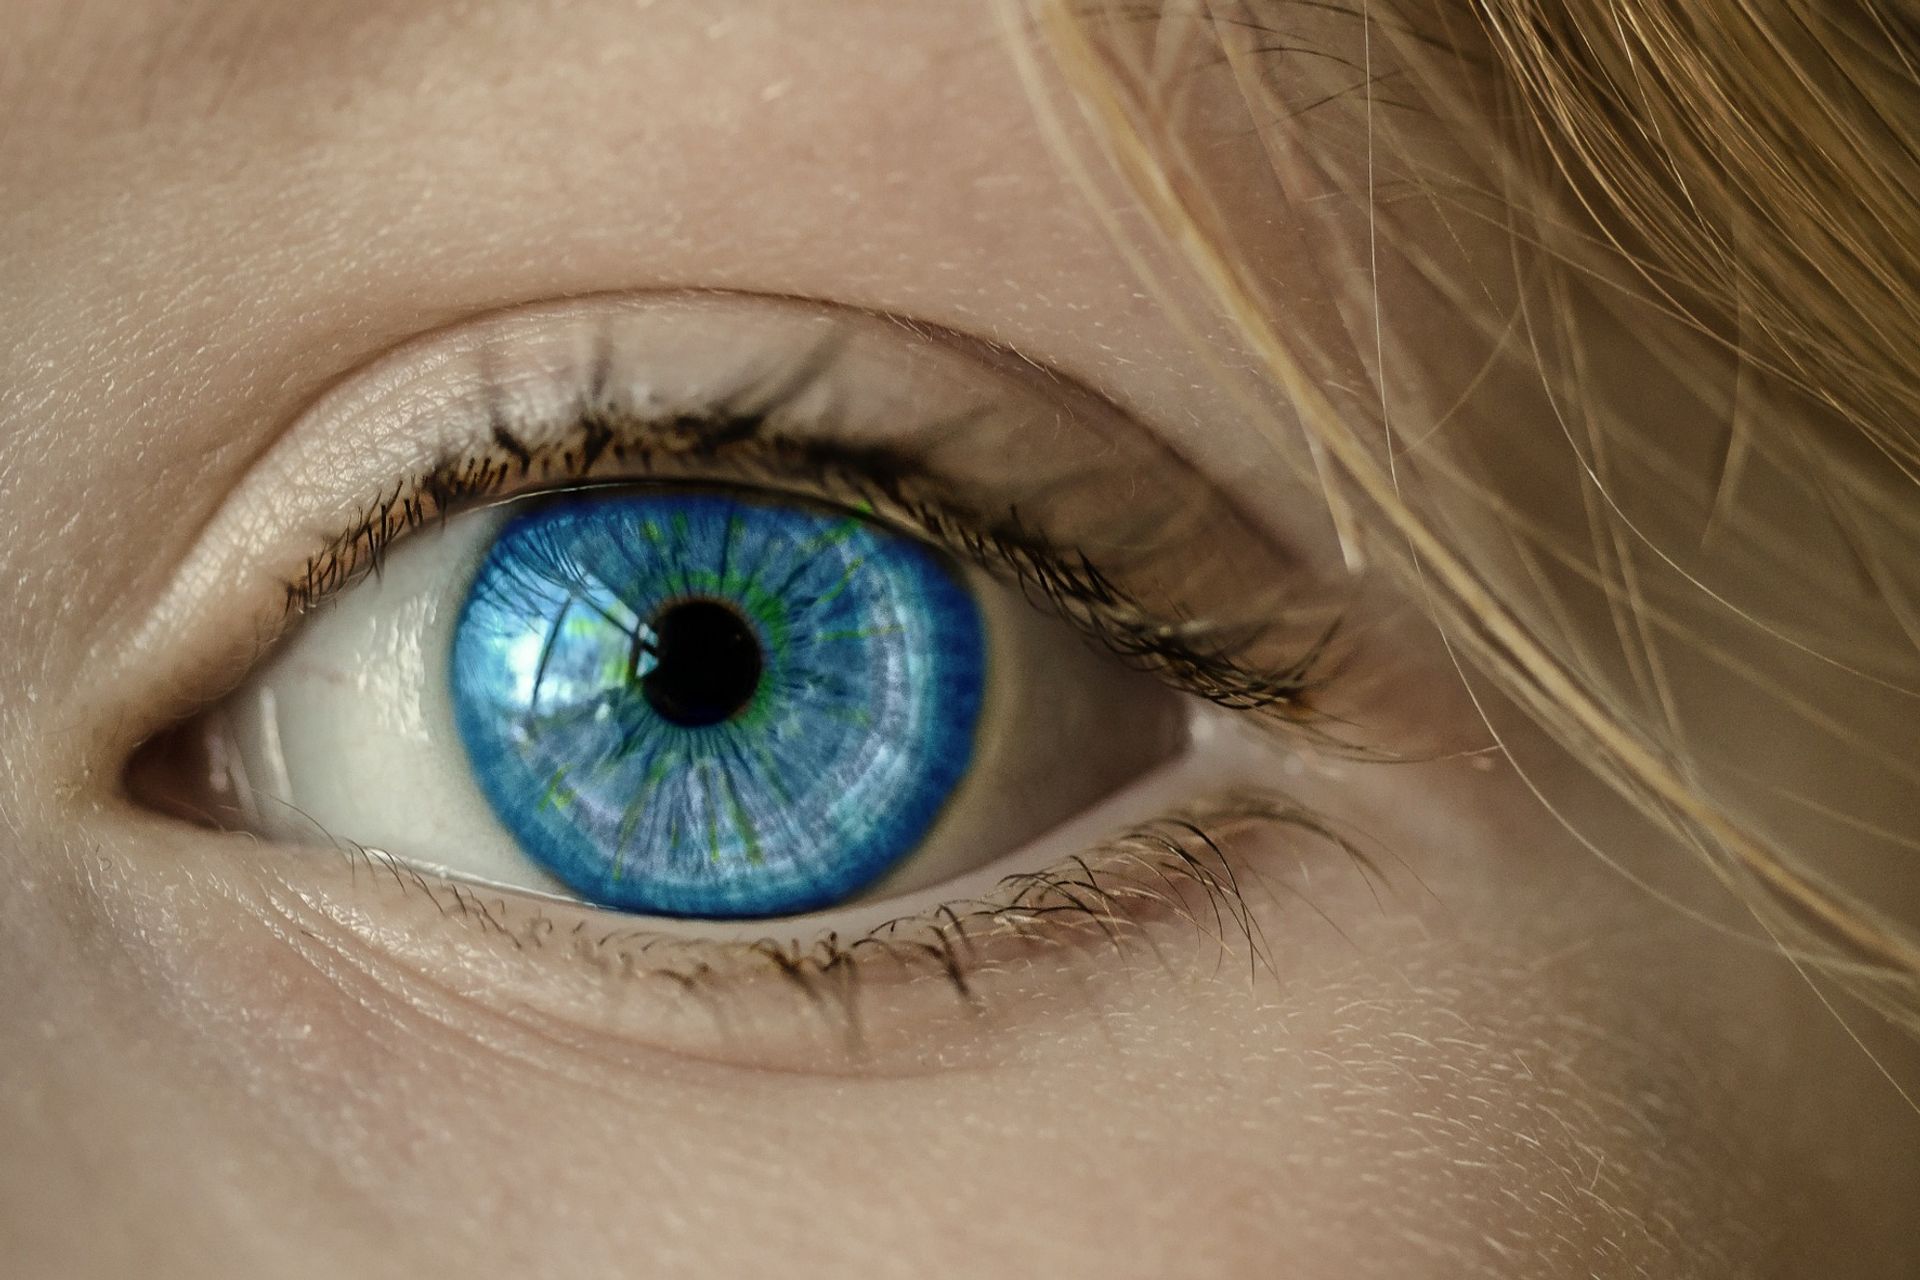 L'occhio dell’uomo raccoglie la luce che gli proviene dall'ambiente, ne regola l'intensità attraverso un diaframma (l'iride) e la focalizza attraverso un sistema regolabile di lenti per formarne un'immagine sulla retina: quest’ultima è trasformata in una serie di segnali elettrici che, attraverso il nervo ottico, sono inviati al cervello per l'elaborazione e l'interpretazione